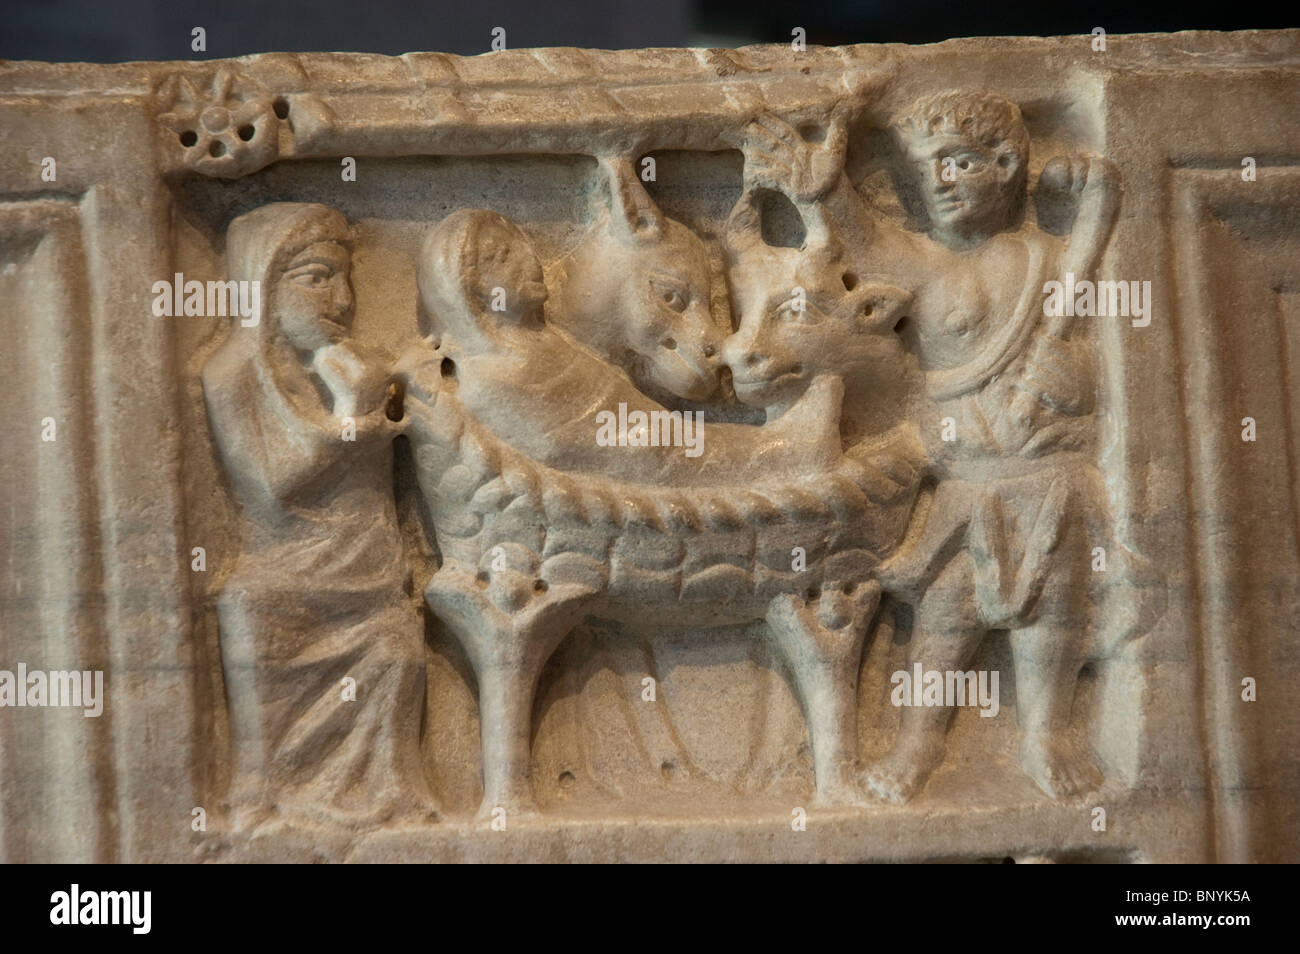 Musée archéologique d'Arles, objets anciens exposés, détail coffret funéraire, scène de la nativité, art de civilisation ancienne Banque D'Images